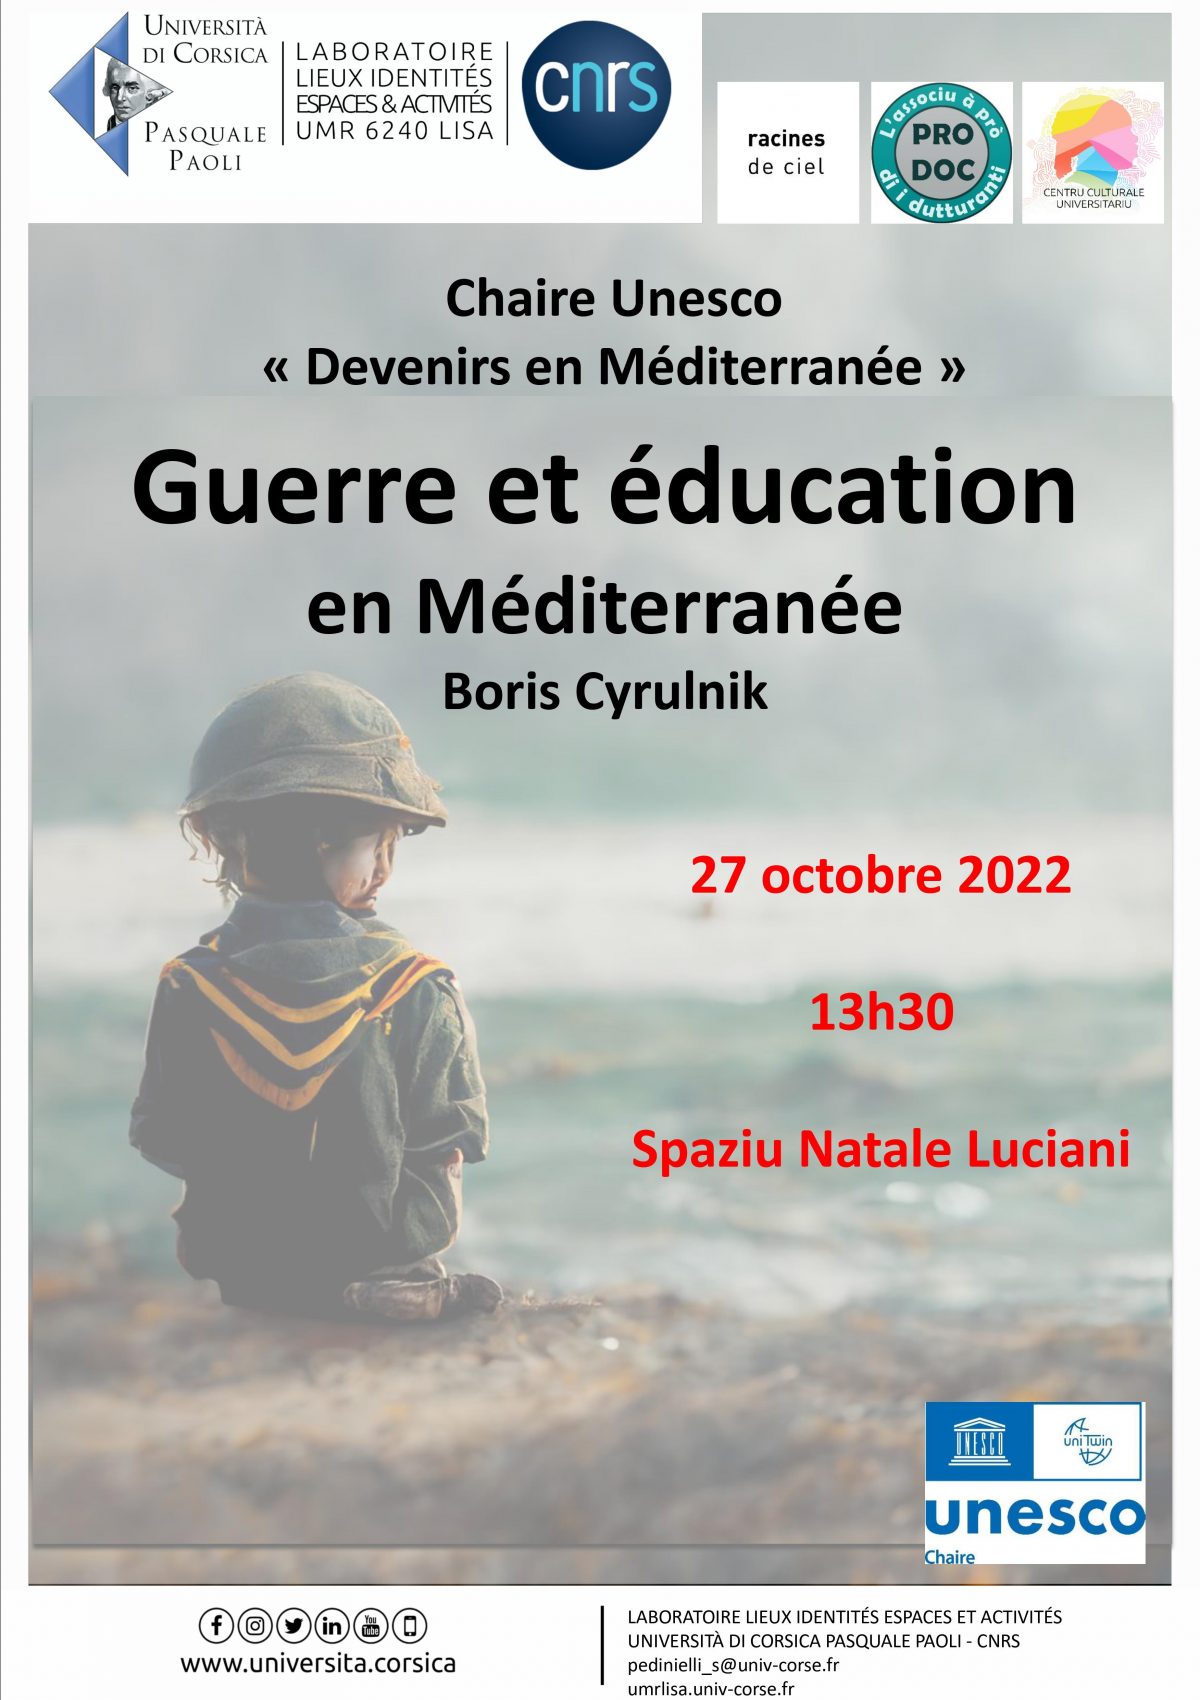 « Guerre et éducation en Méditerranée » Conférence de Boris Cyrulnik